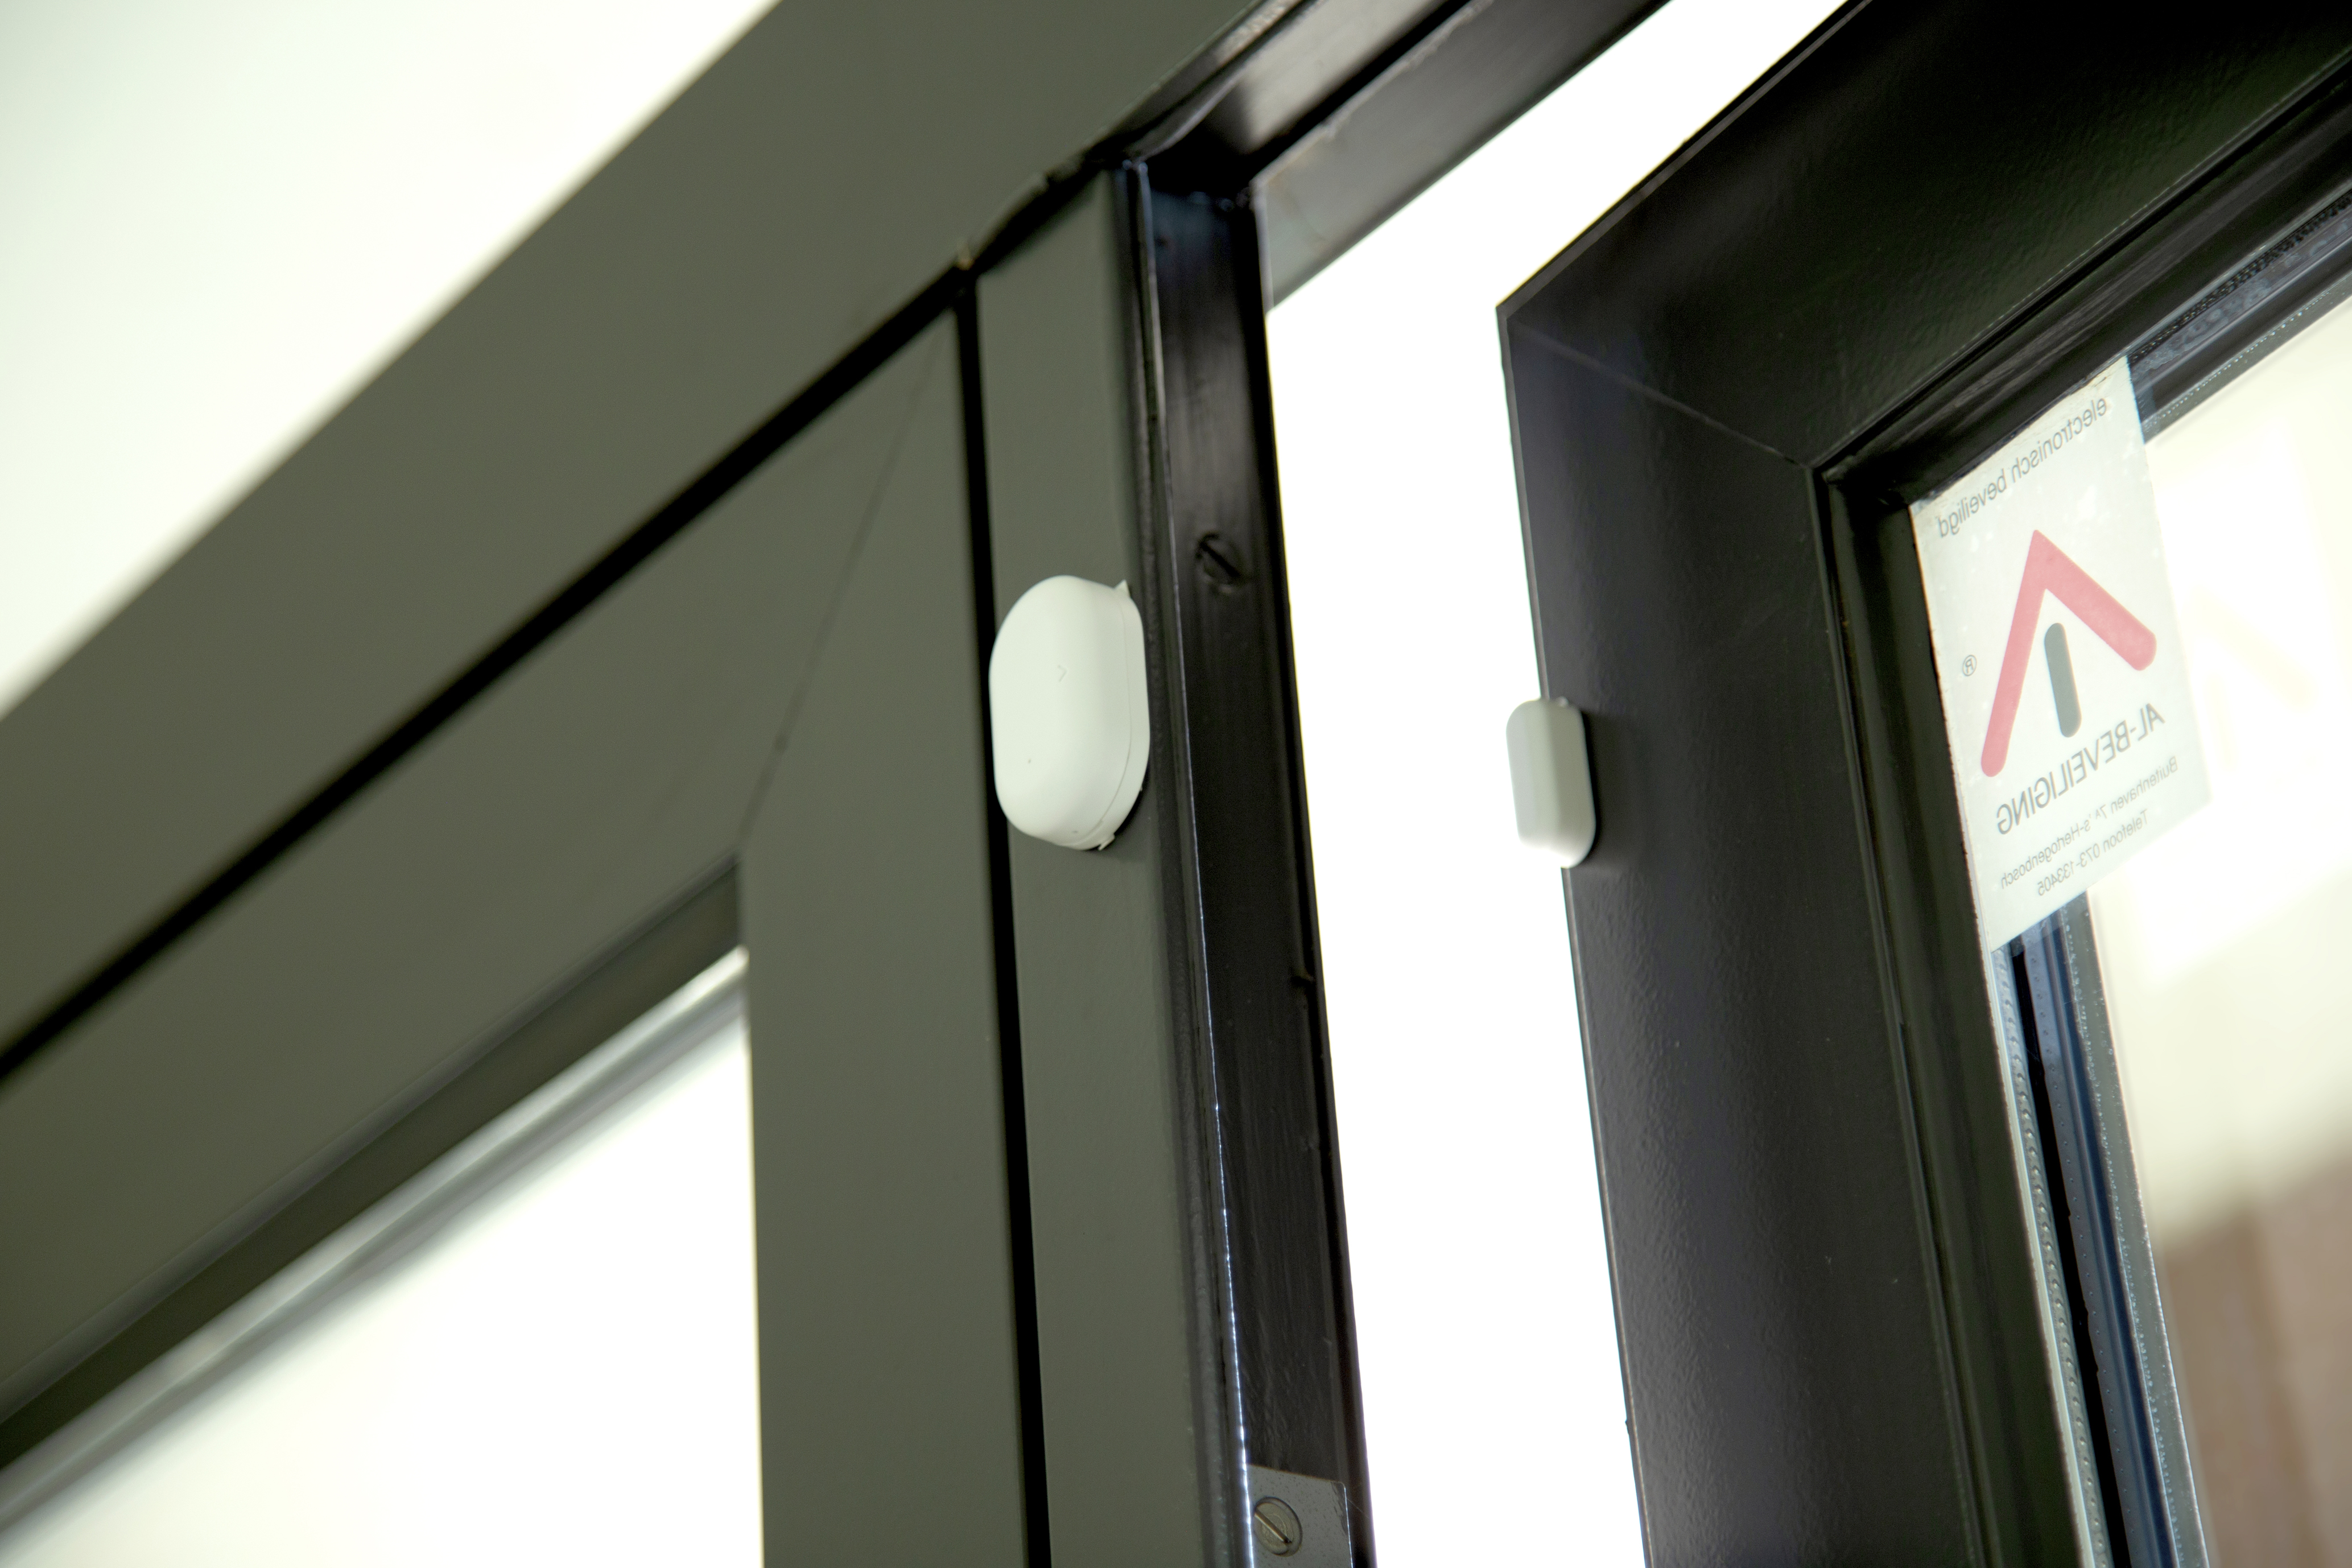 SMART-DOOR10 - ALECTO Hausautomatisierung Bewegungsmelder zur ZigBee Fenster-/Türsensor Smarter Weiß -